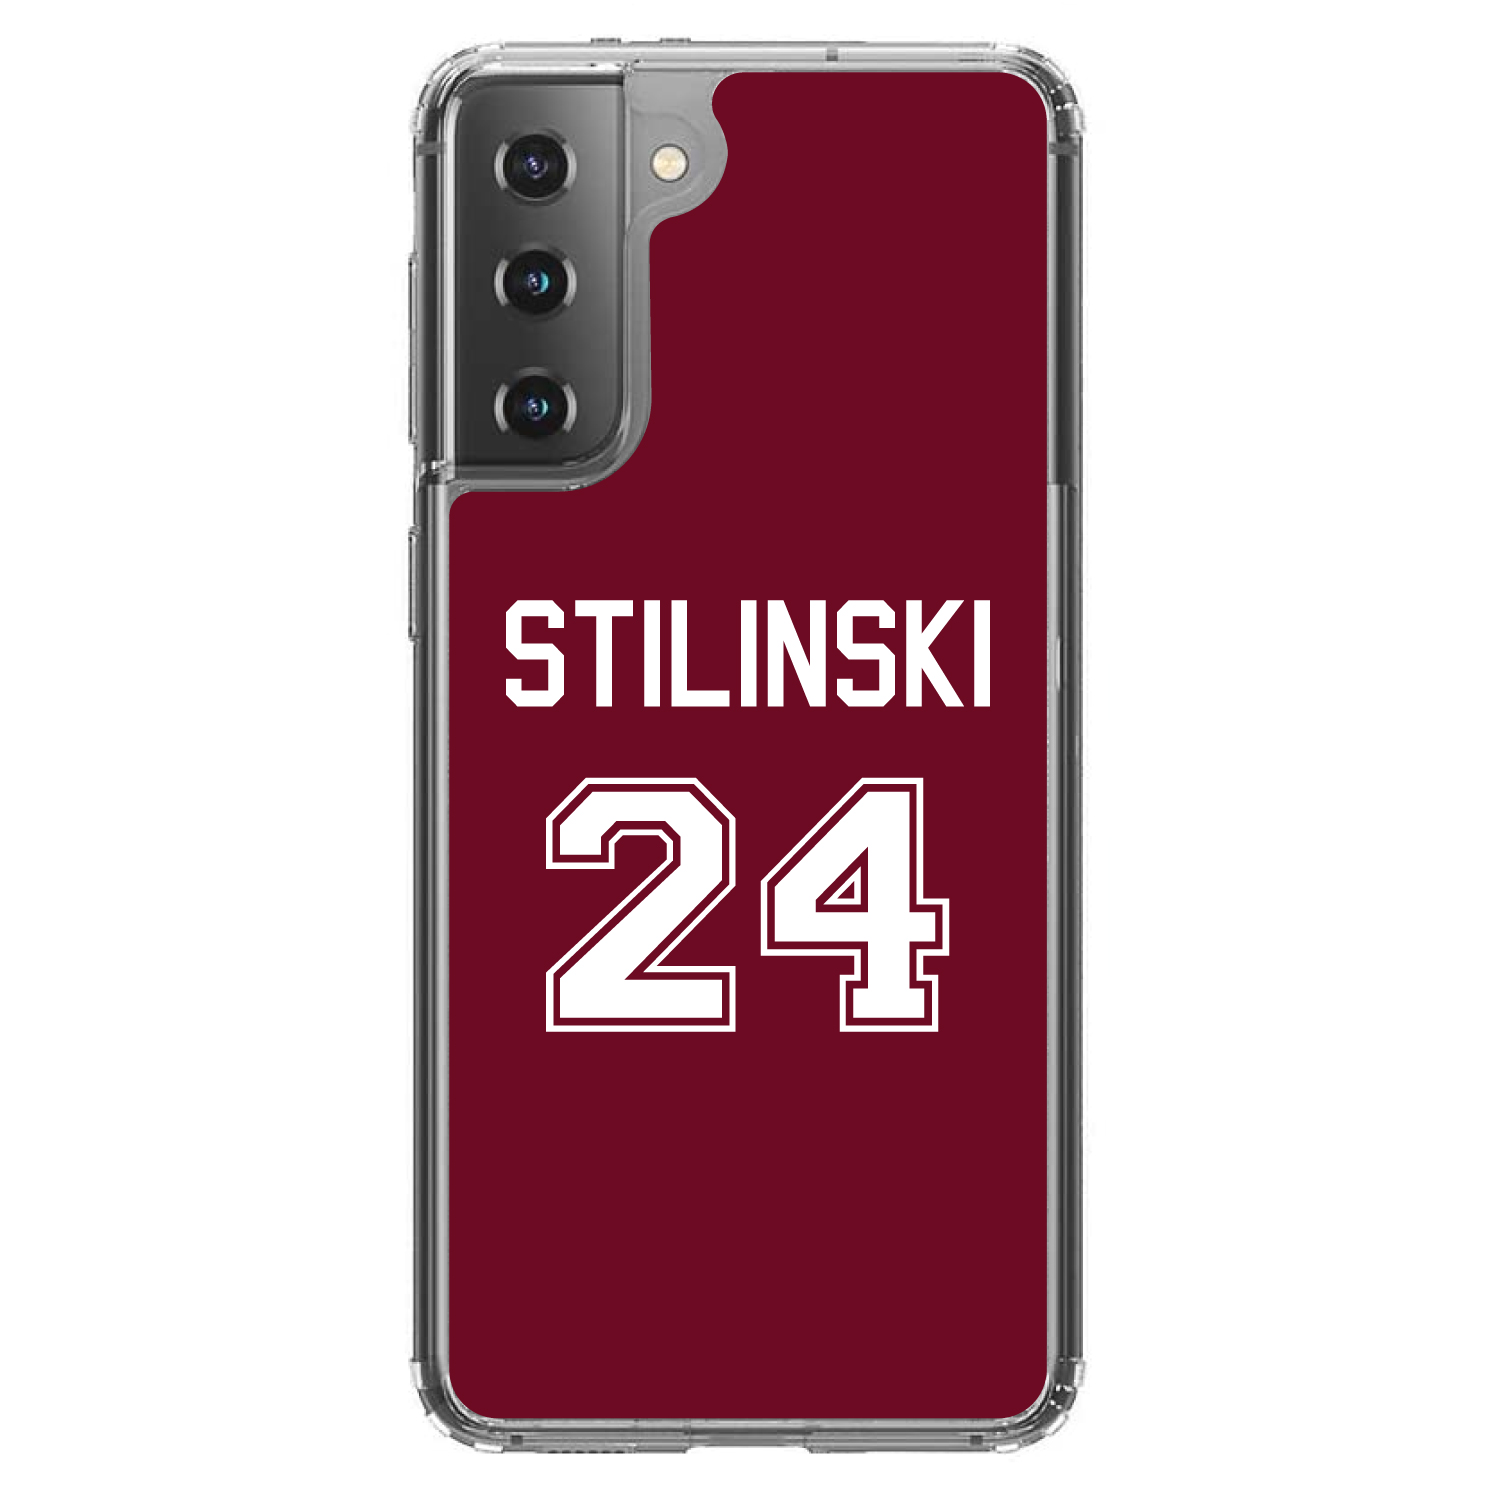 Choose Model Stilinski 24 Custom OtterBox Defender for Galaxy S  Galaxy Note